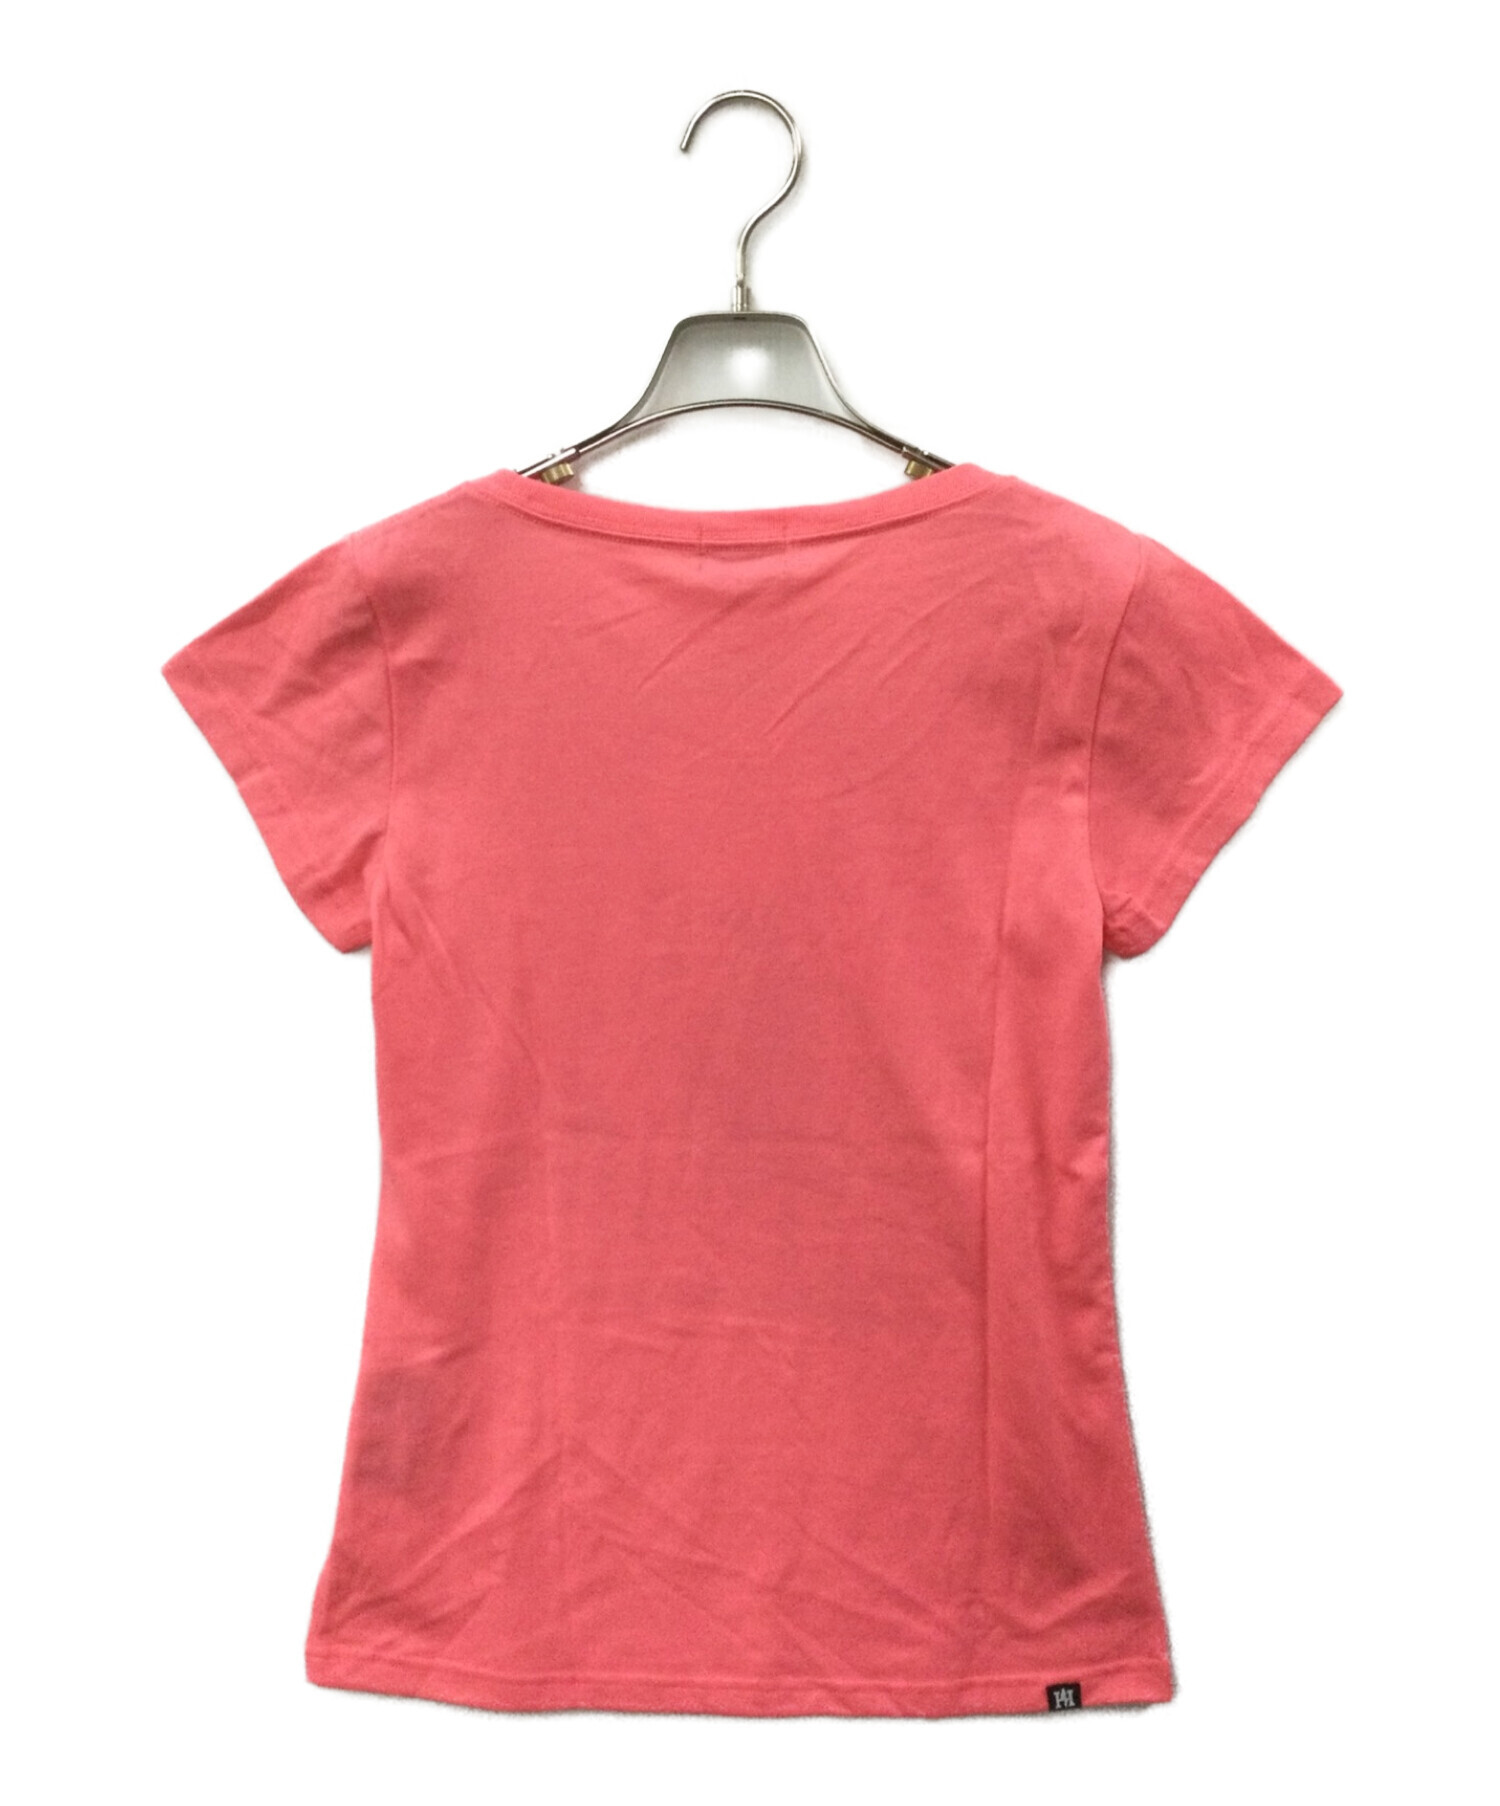 ヒステリックグラマー 半袖Tシャツ ピンク フリーサイズ